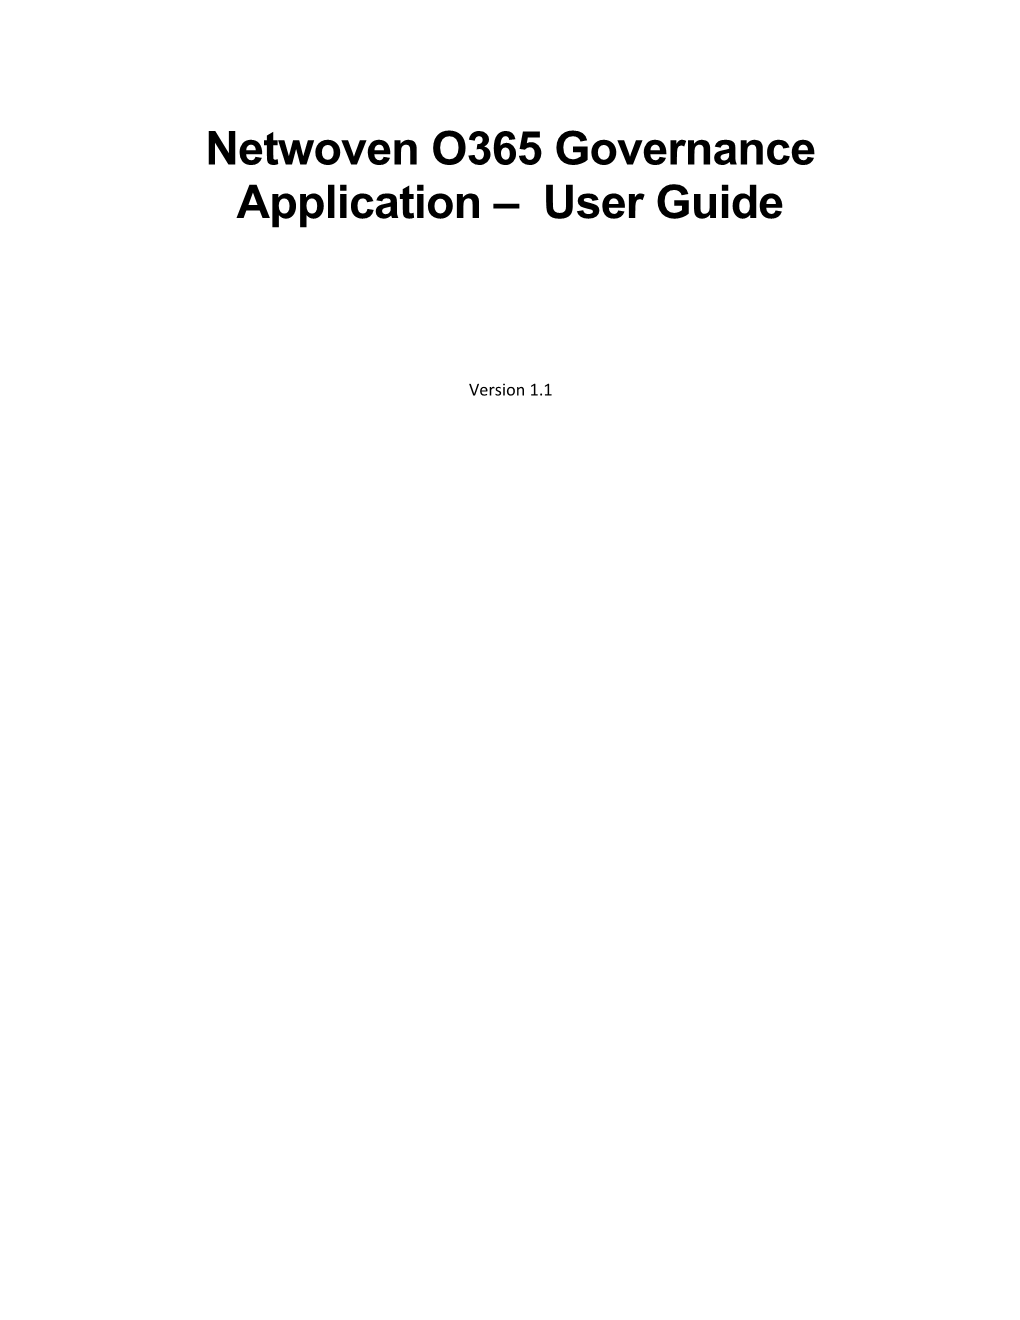 Netwoven O365 Governance Application User Guide